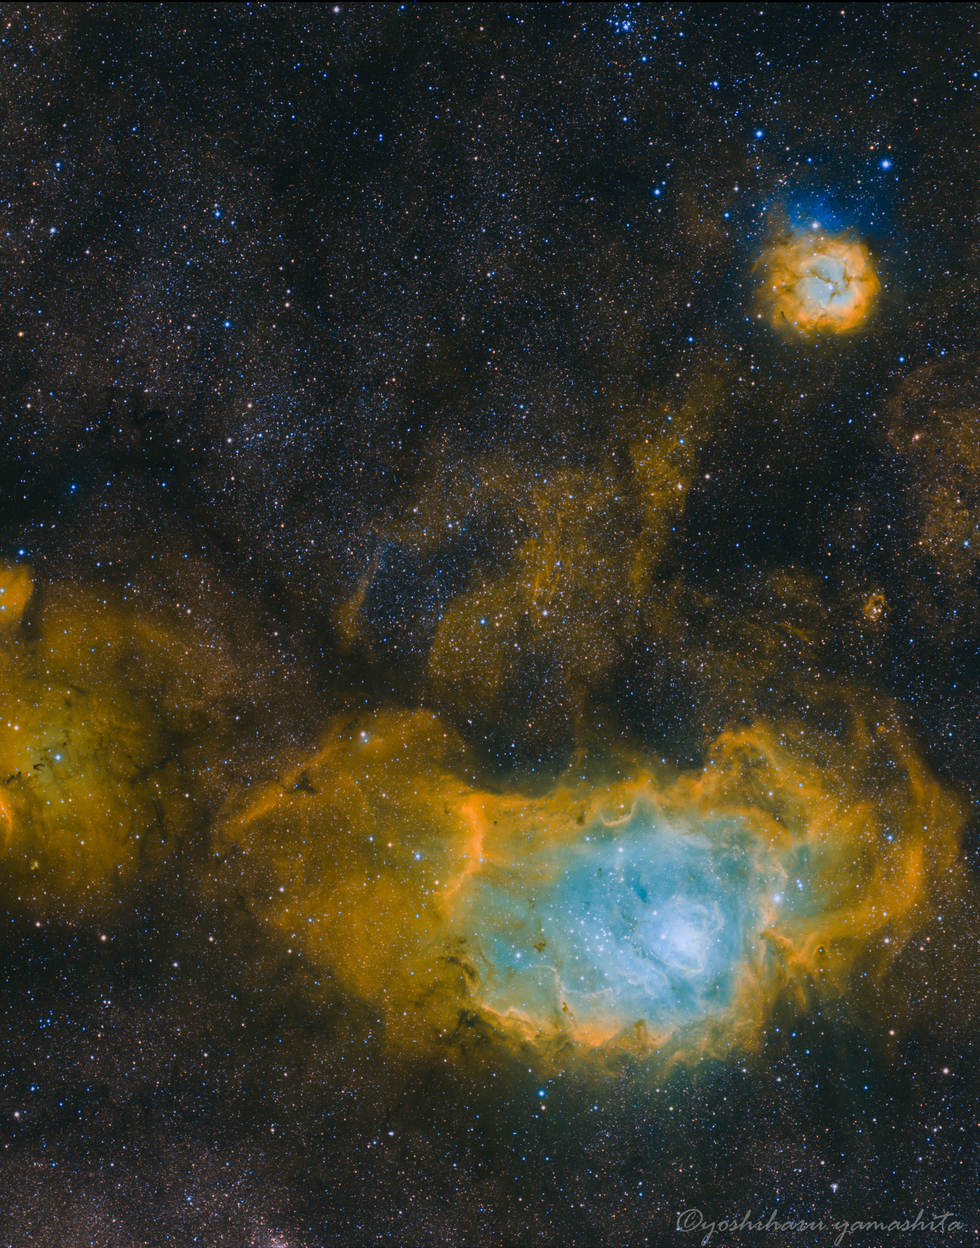 The Lagoon Nebula & Trifid Nebula